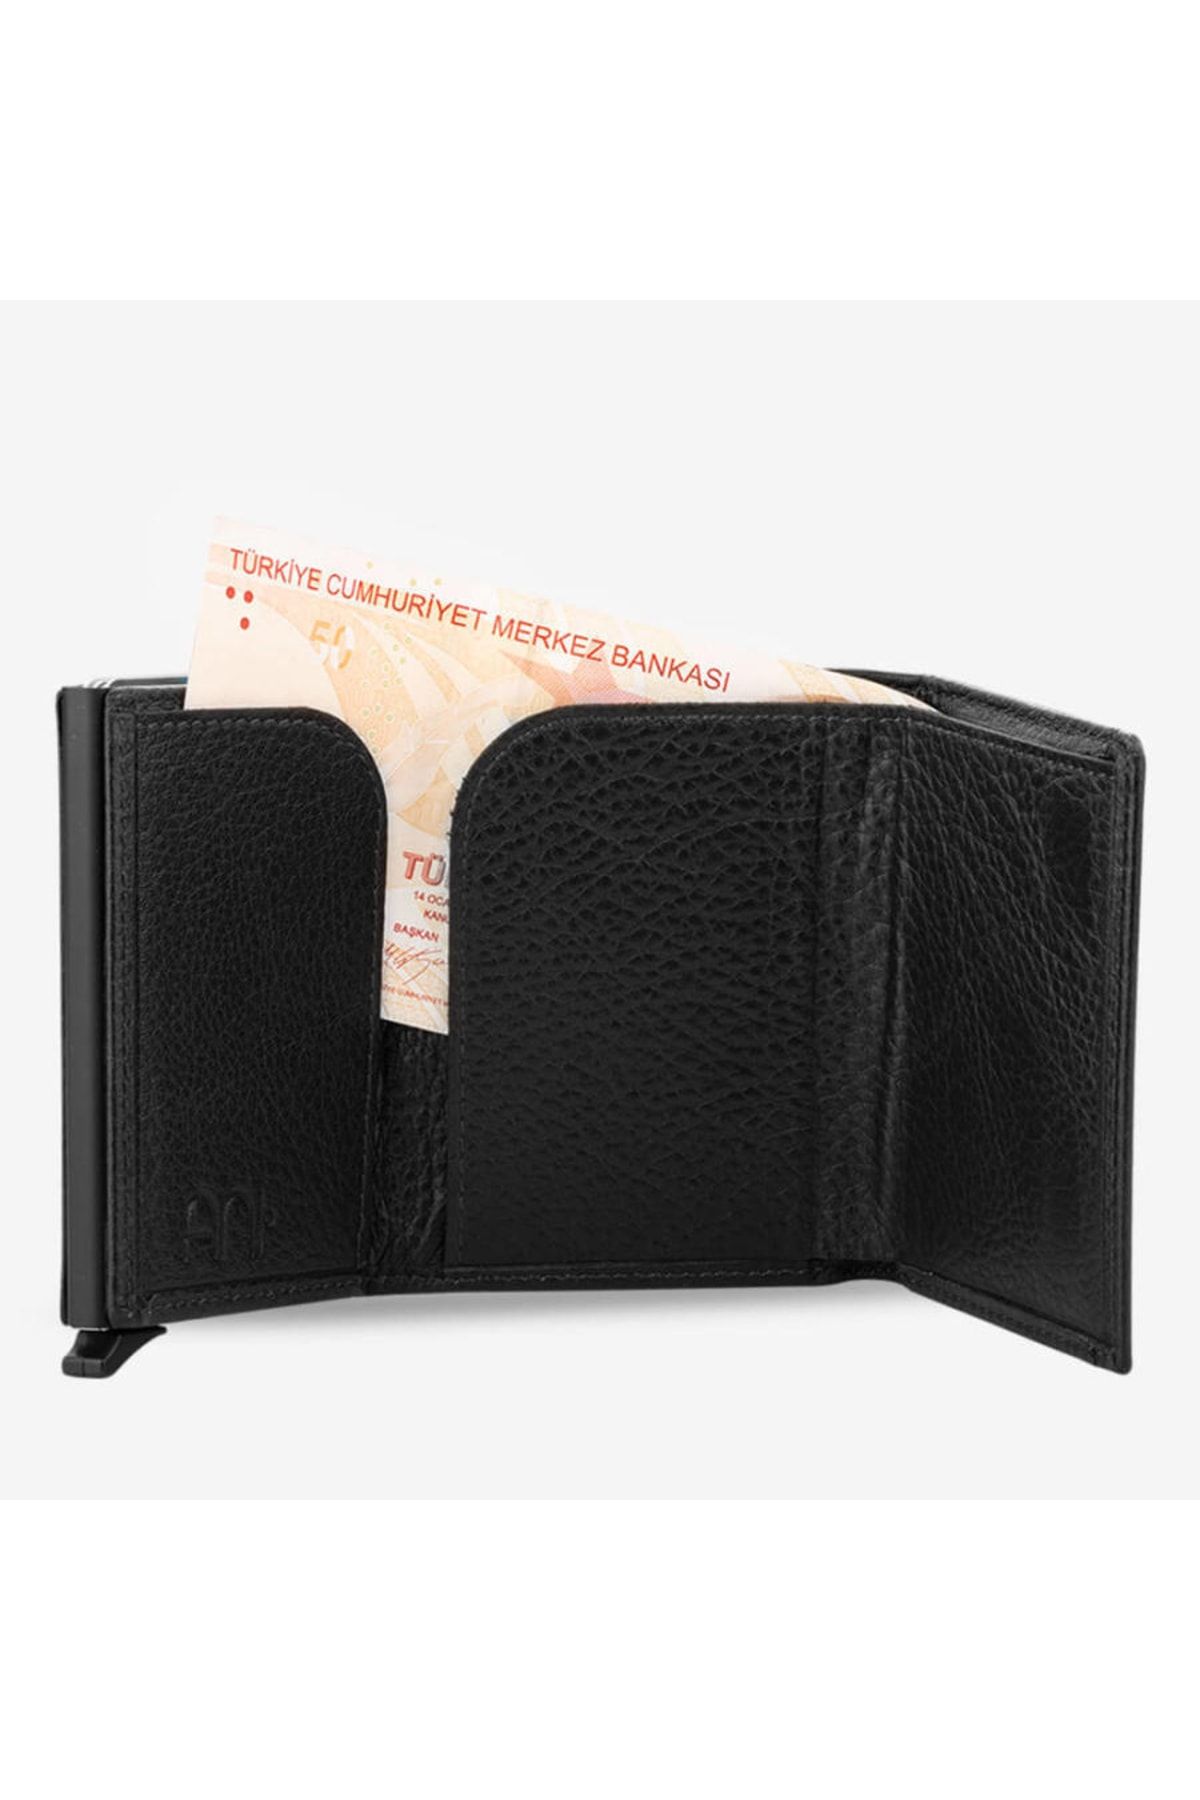 Erkek Siyah RFID Korumalı %100 Hakiki Orijinal Mekanizmalı  Deri Cüzdan Kartlık Kağıt Para Bölmeli